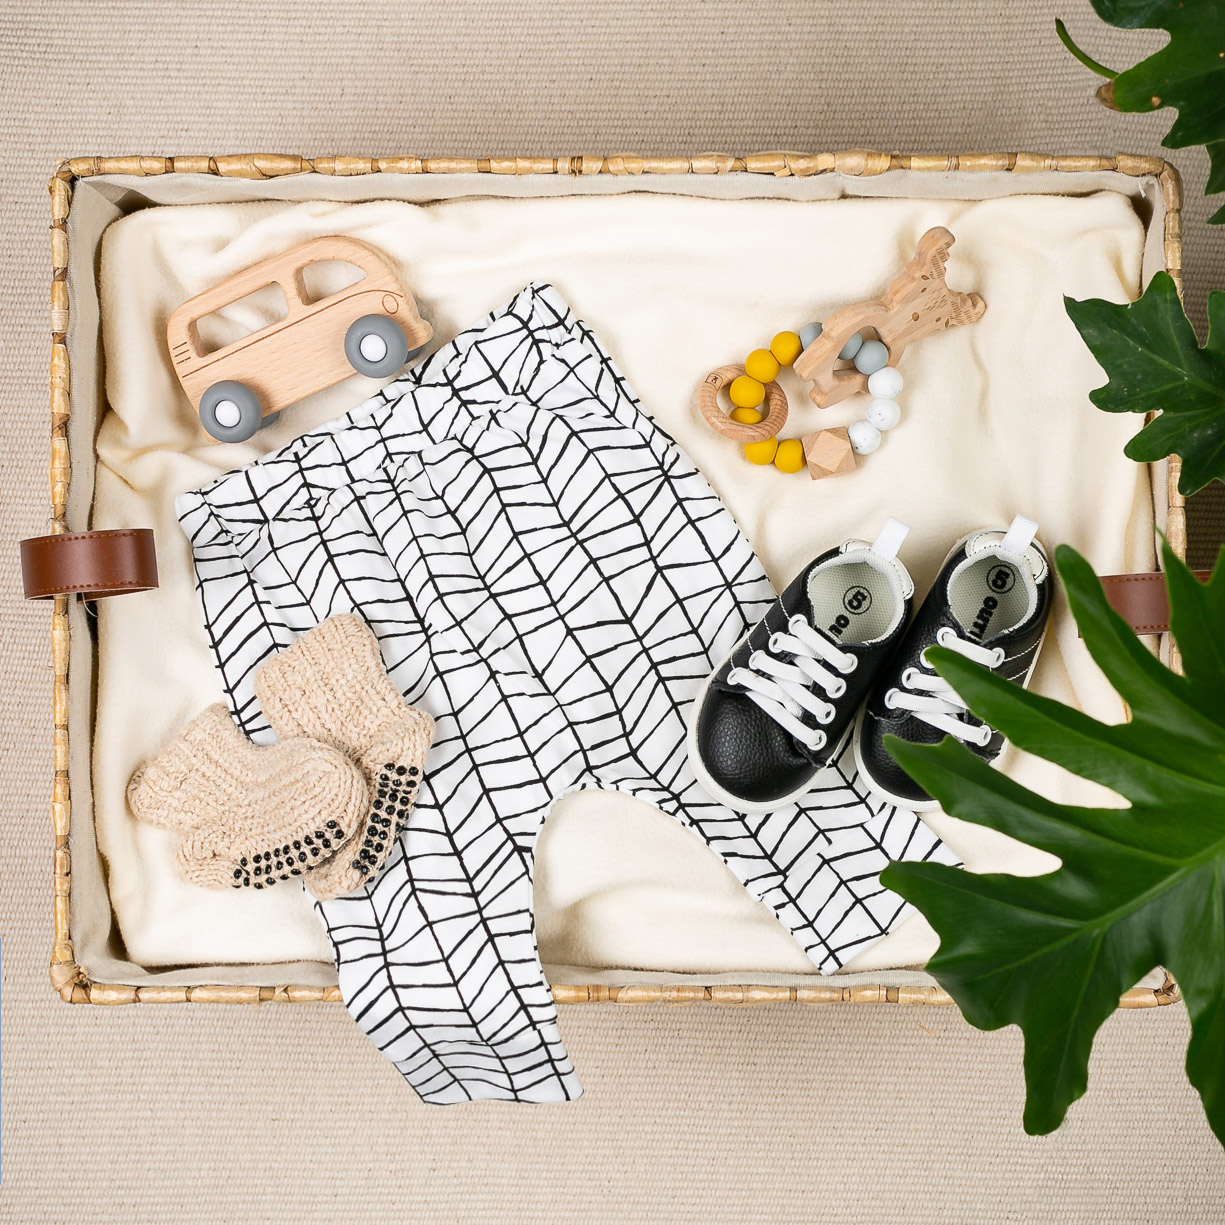 Panier remplit de vêtements et accessoires pour bébé